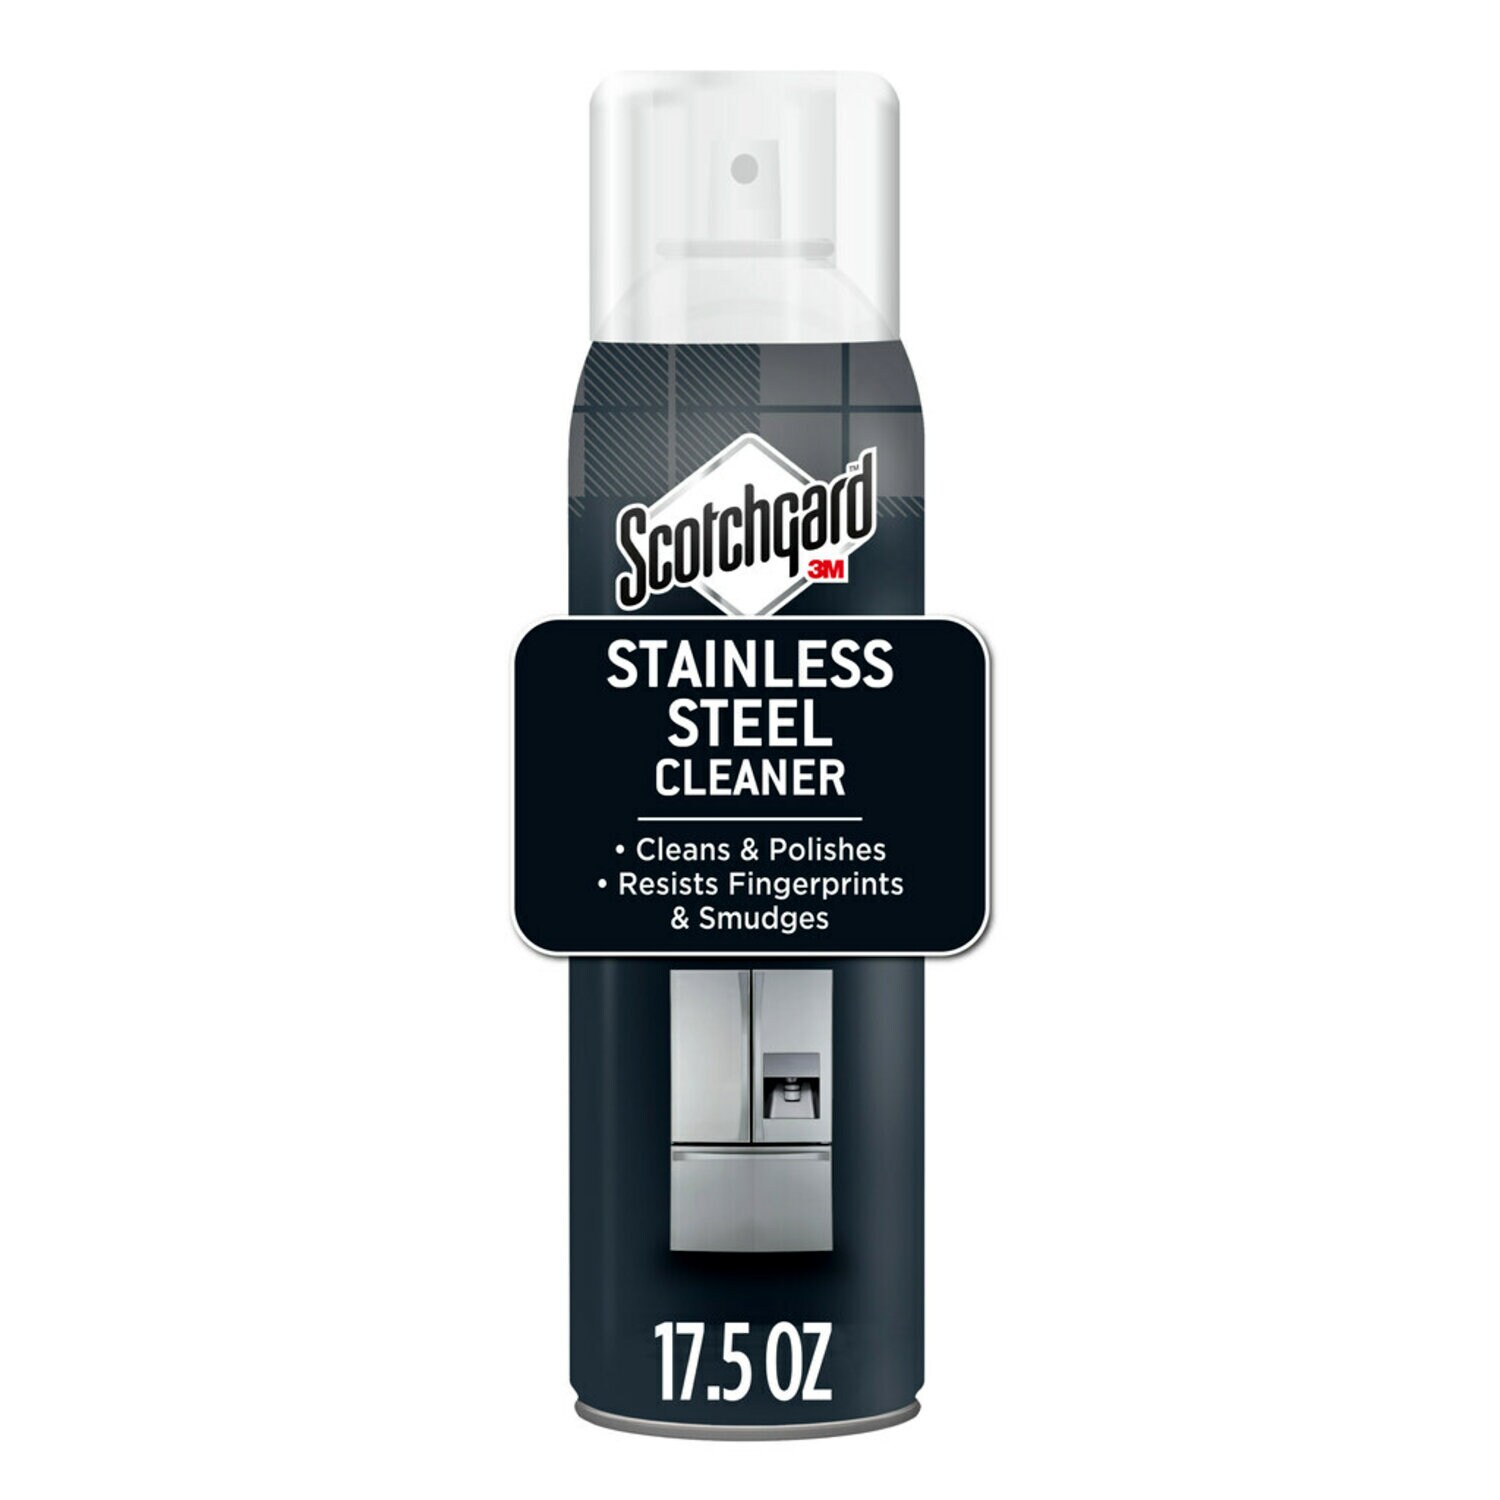 7010311801 - Scotchgard Stainless Steel Cleaner 7966-SG, 17.5 oz (495 g), 6/cs